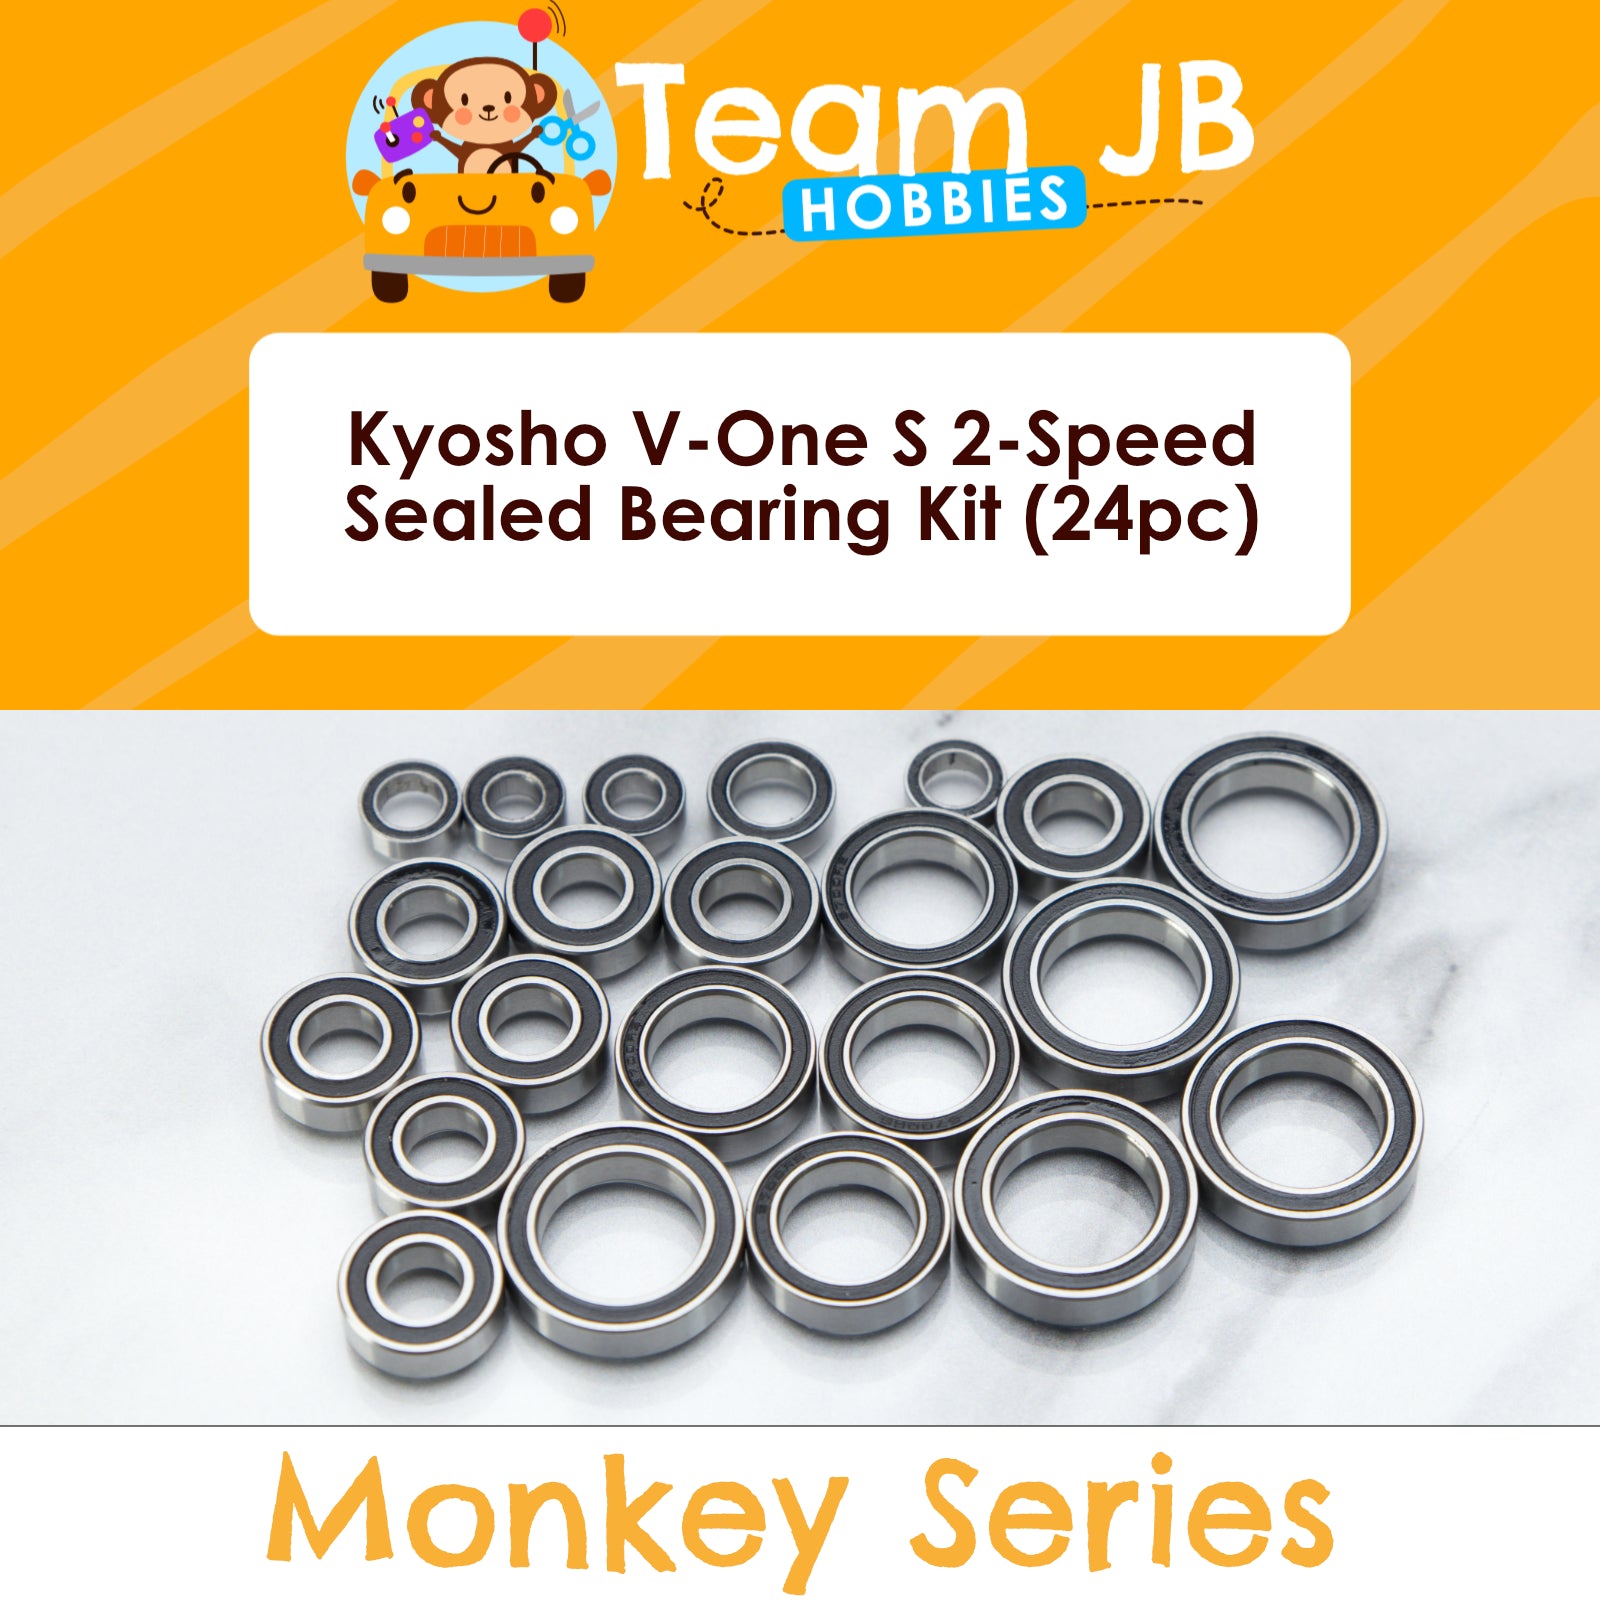 Kyosho V-One S 2-Speed - Sealed Bearing Kit